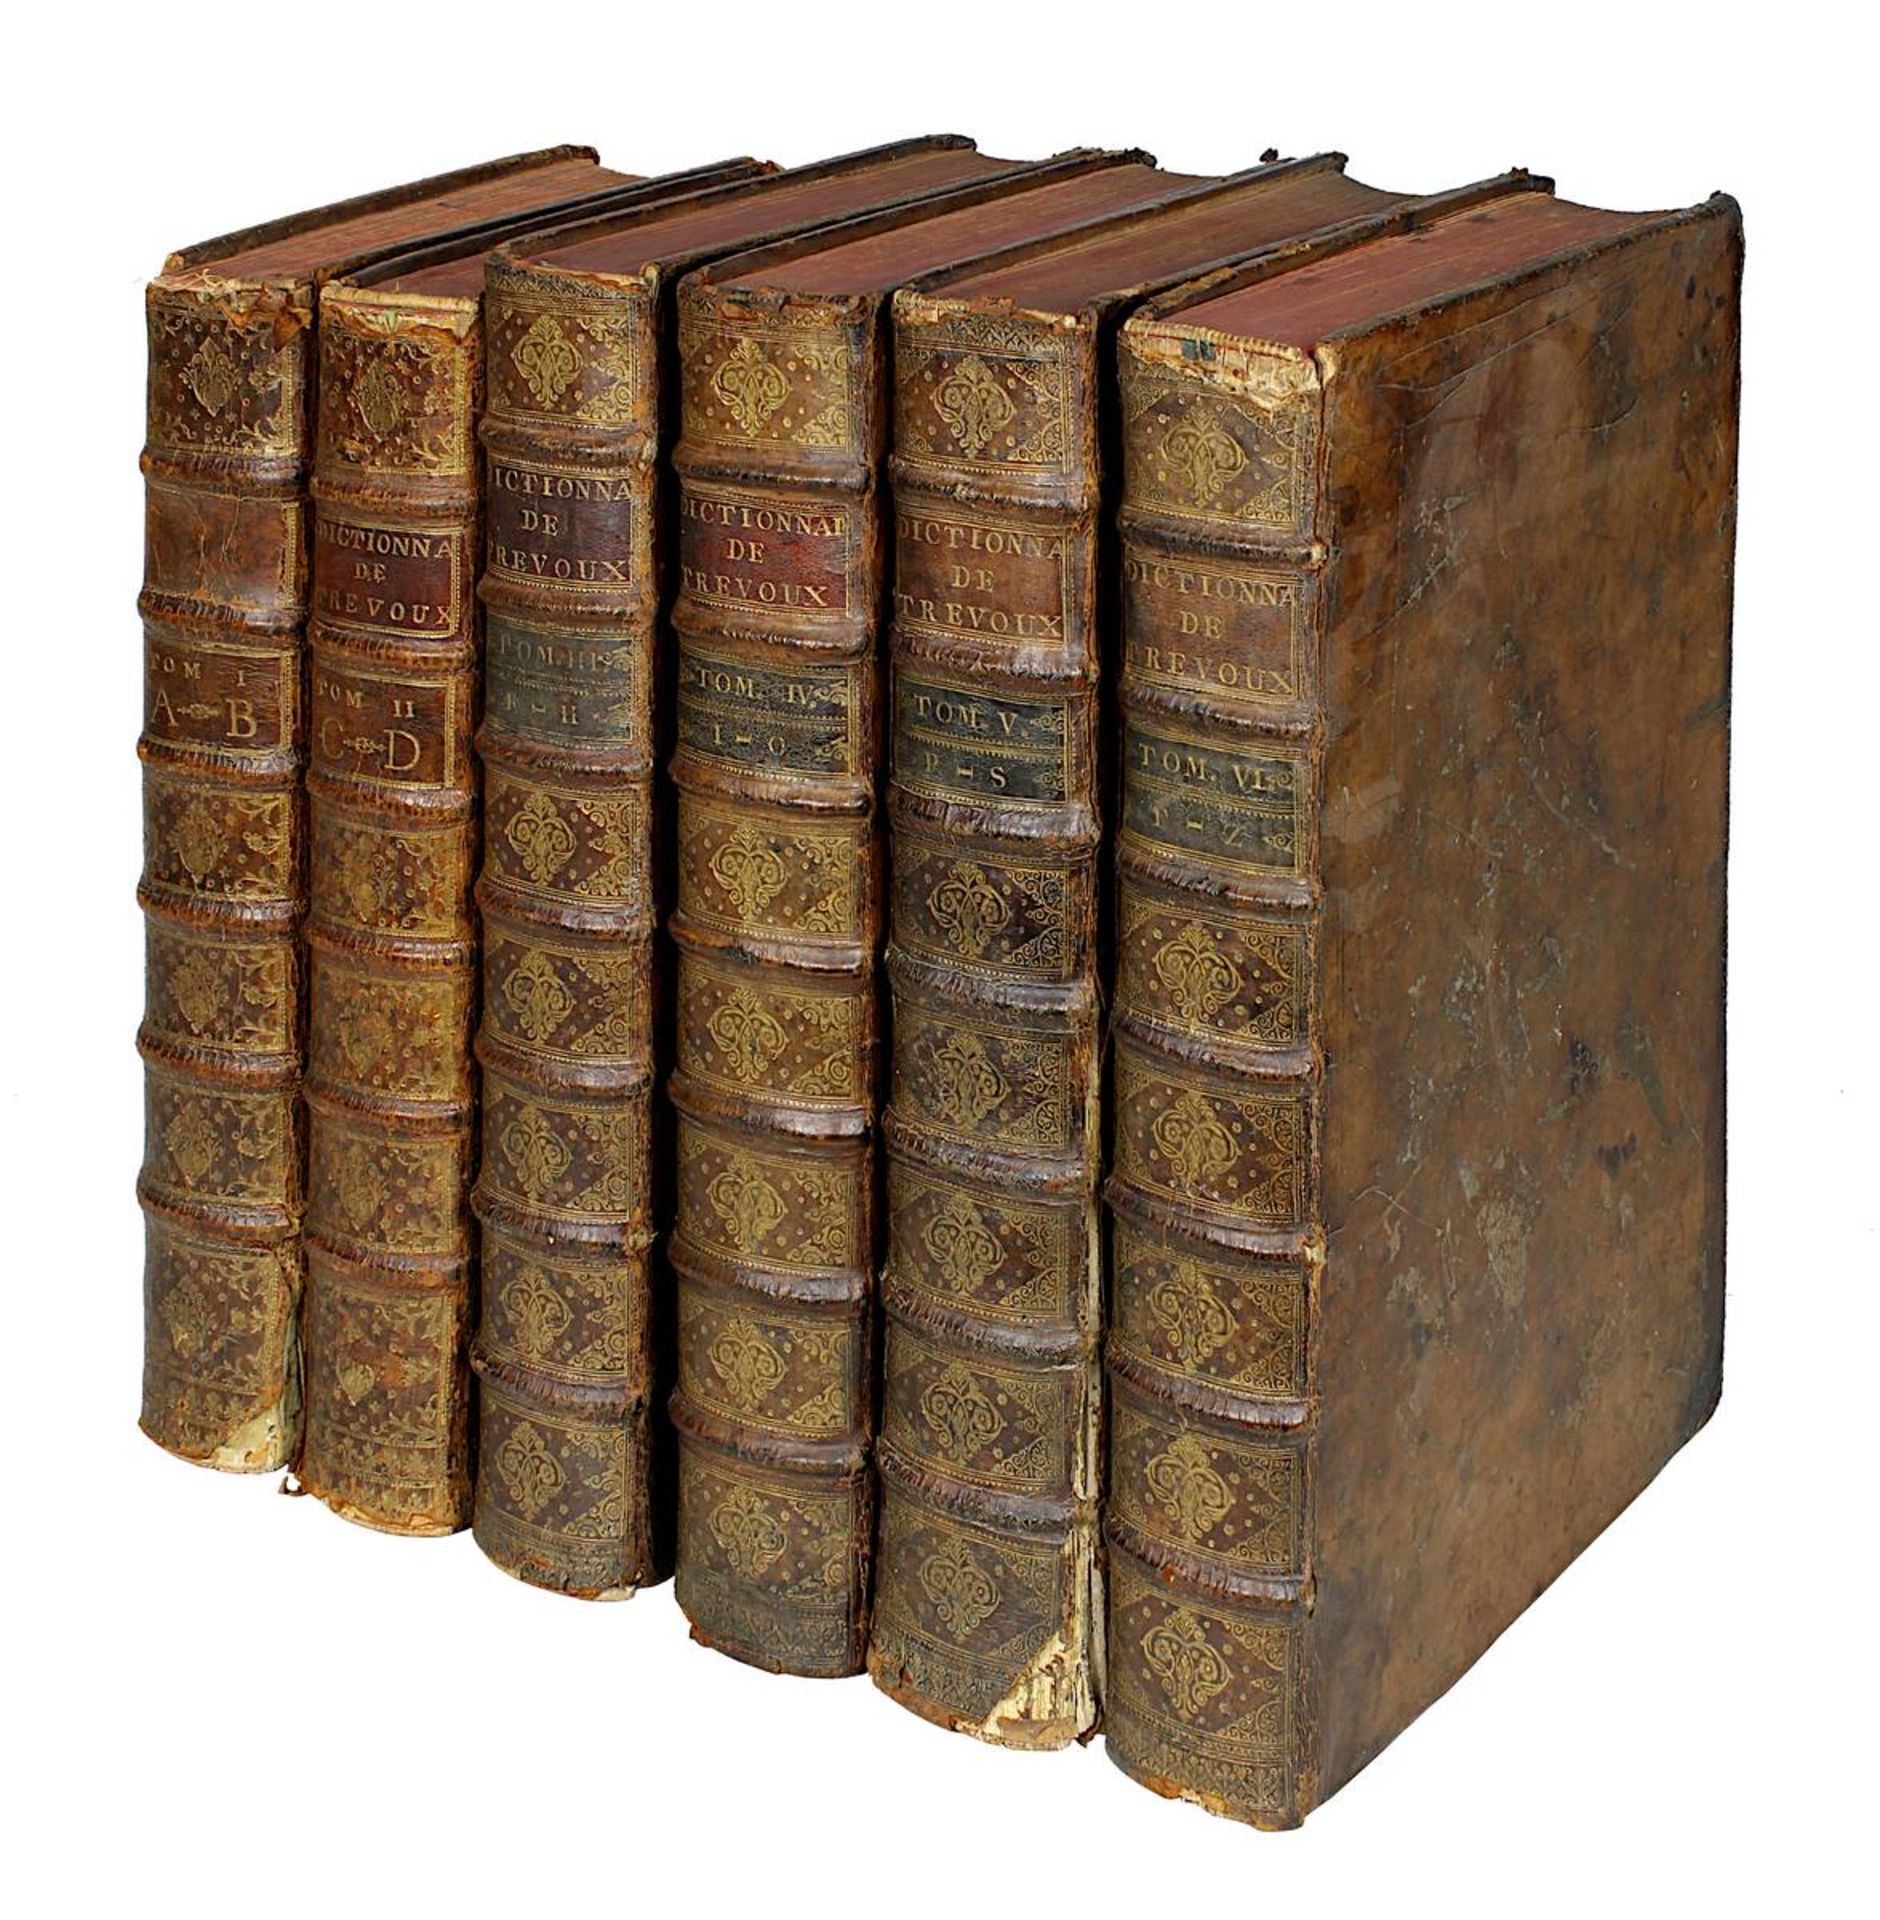 "Dictionnaire Universel Francois et Latin ..." - Dictionnaire de Trévoux, 6 Bände, Paris u. Nancy - Image 2 of 2